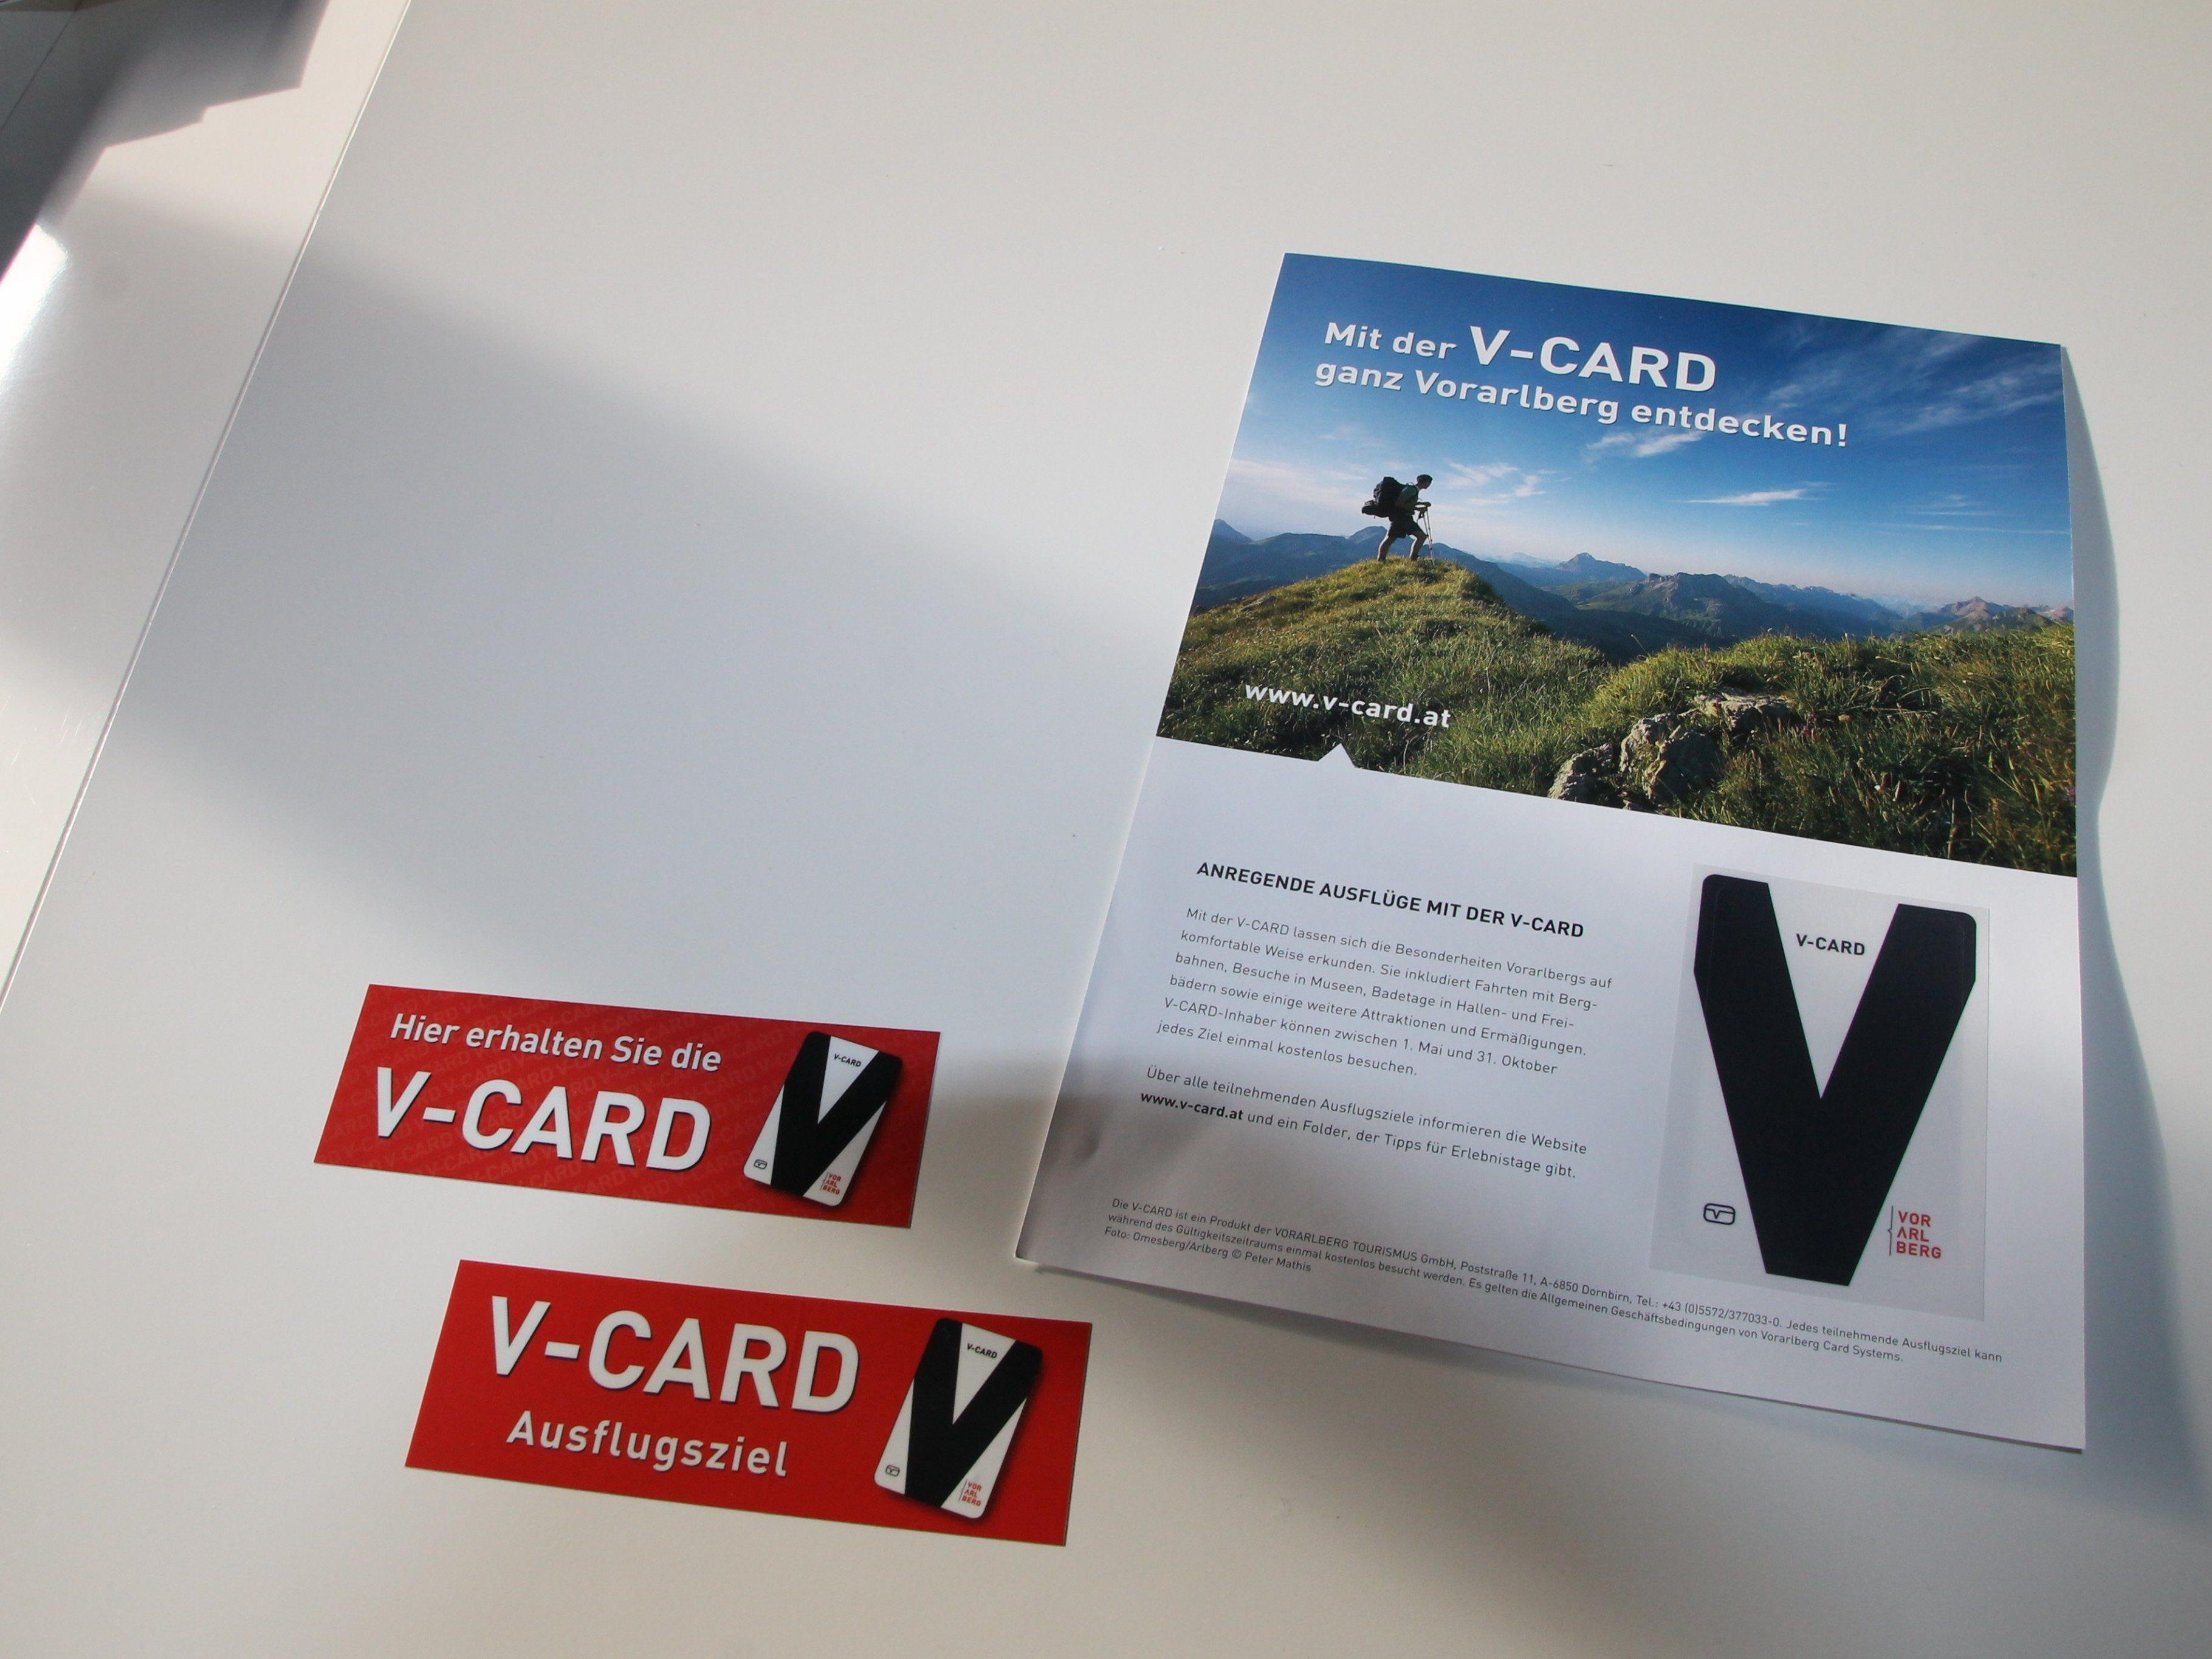 Die in der Museumswelt erhältliche V-Card ist zu Ostern um bis zu 11 Euro günstiger.